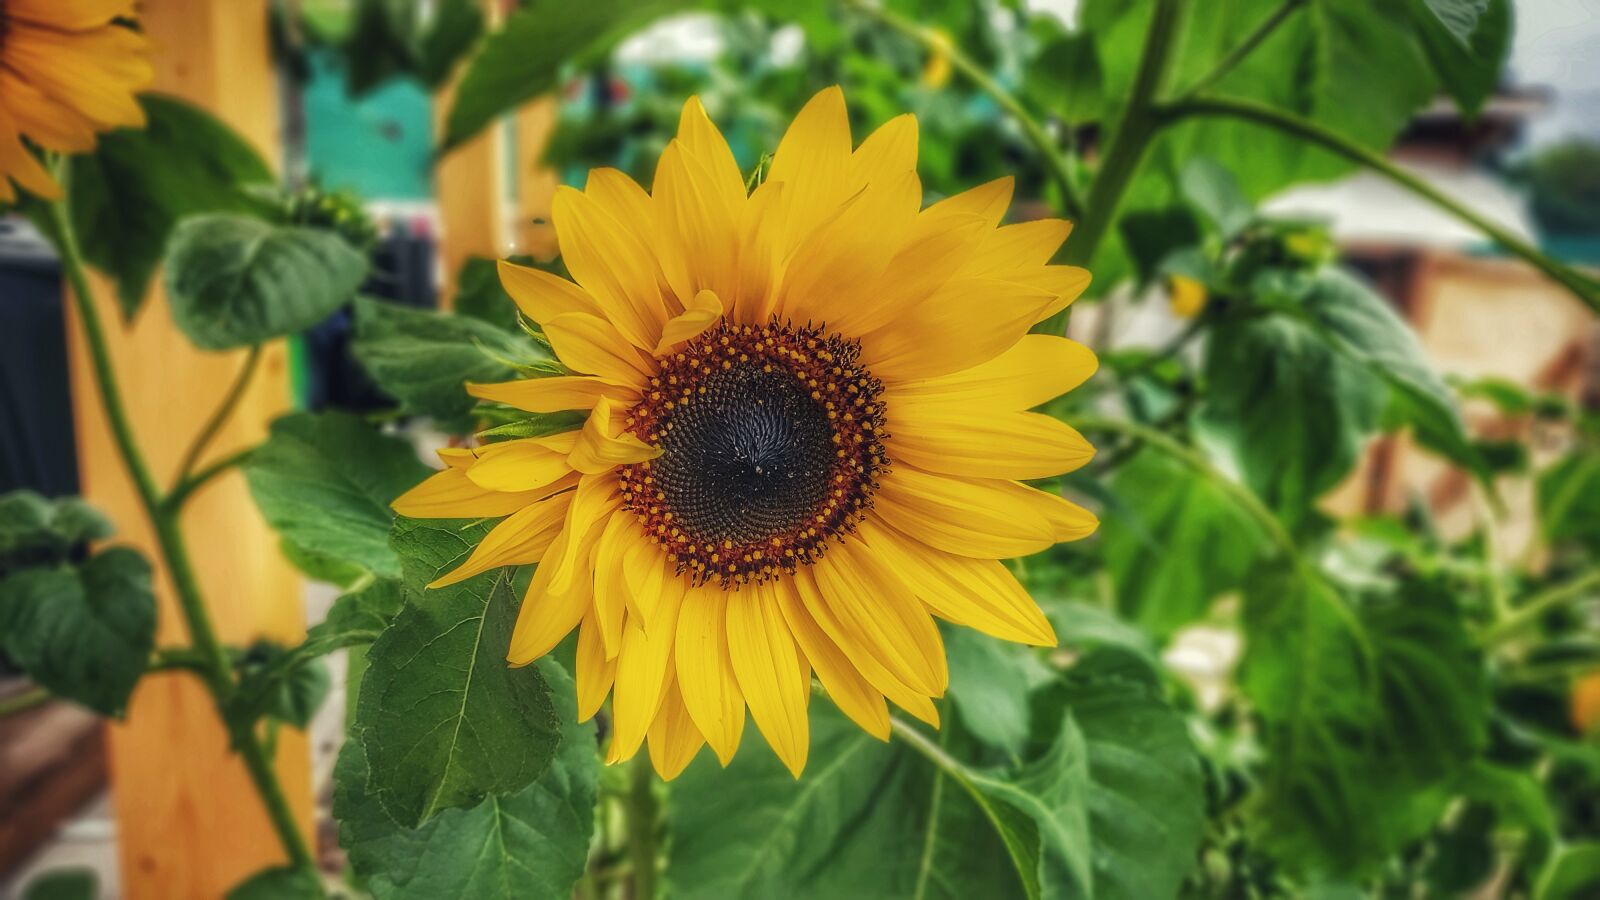 Xiaomi Mi 9 Lite sample photo. Sunflower, flower, summer photography